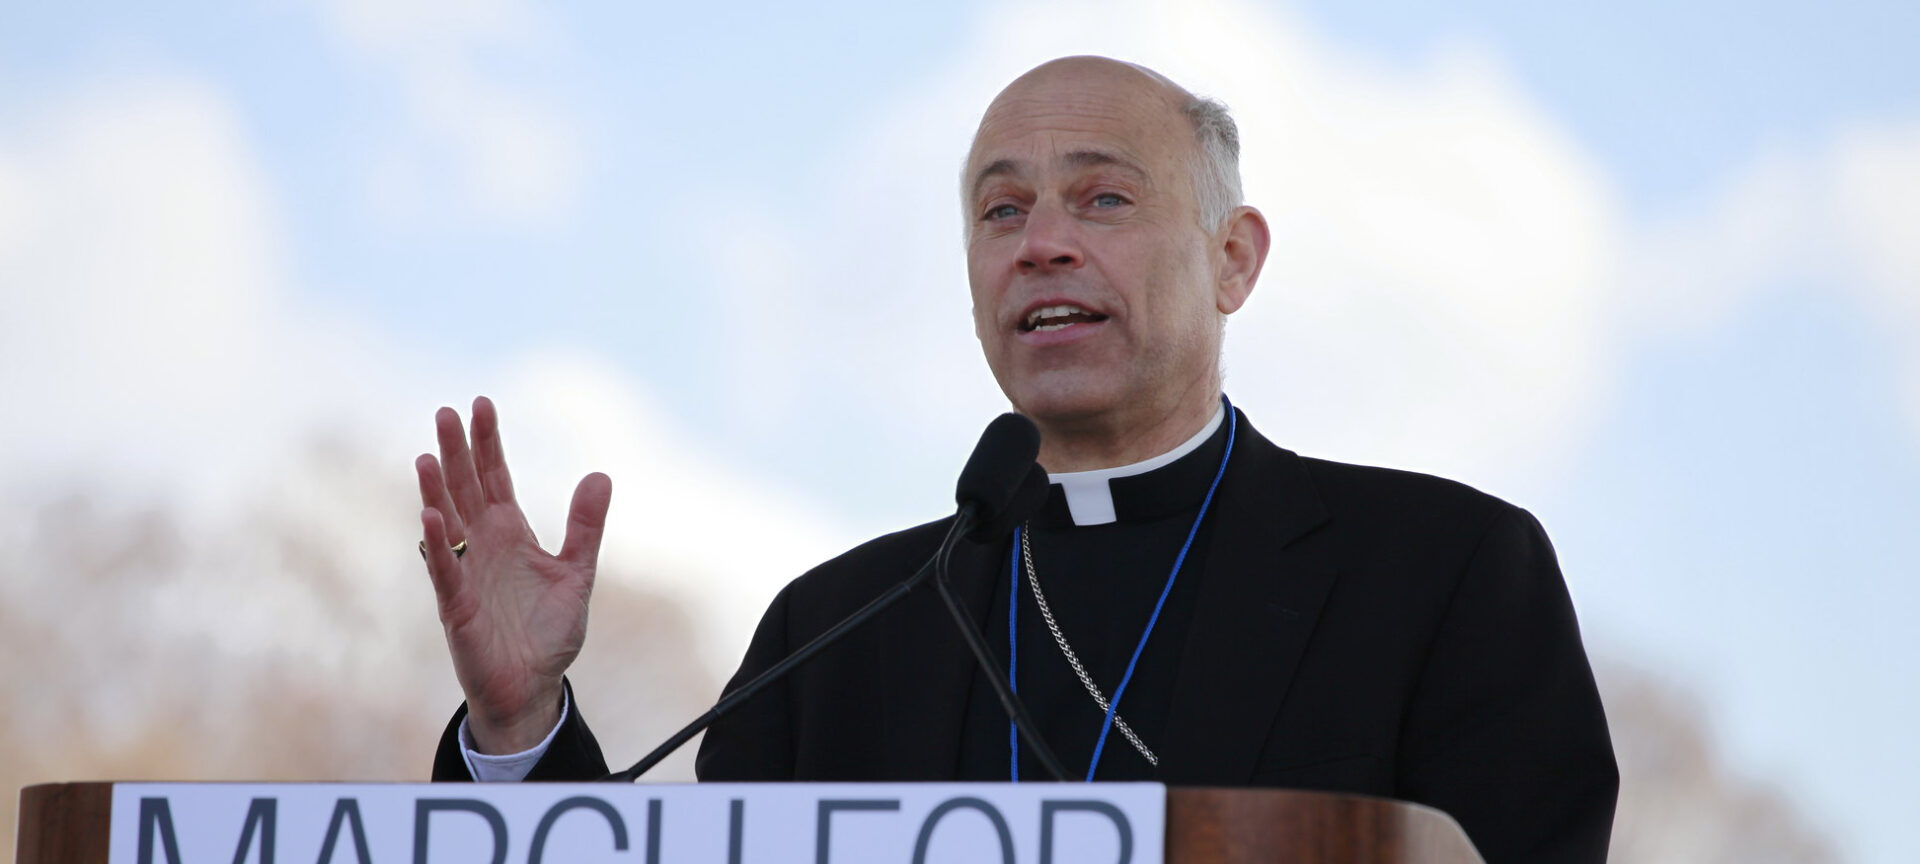 Mgr Salvatore Cordileone, archevêque de San Francisco, est considéré par beaucoup comme un conservateur | © American Life League/Flickr/CC BY-NC 2.0